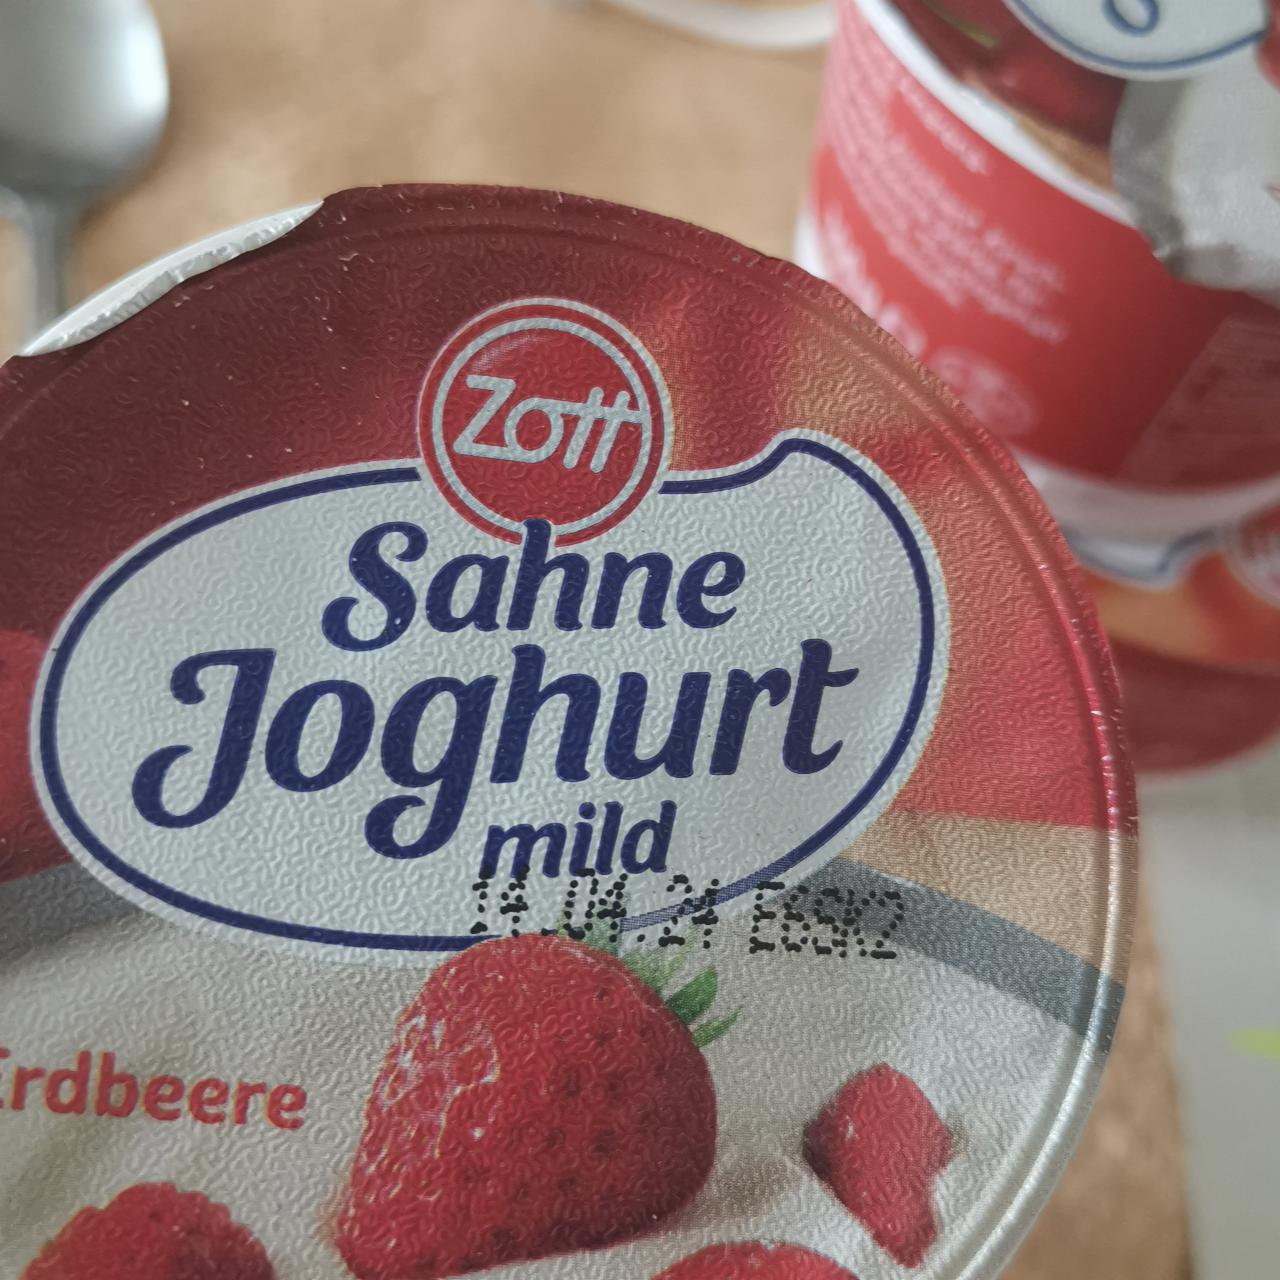 Фото - Йогурт клубничный Sahne Joghurt mild Erdbeer Zott